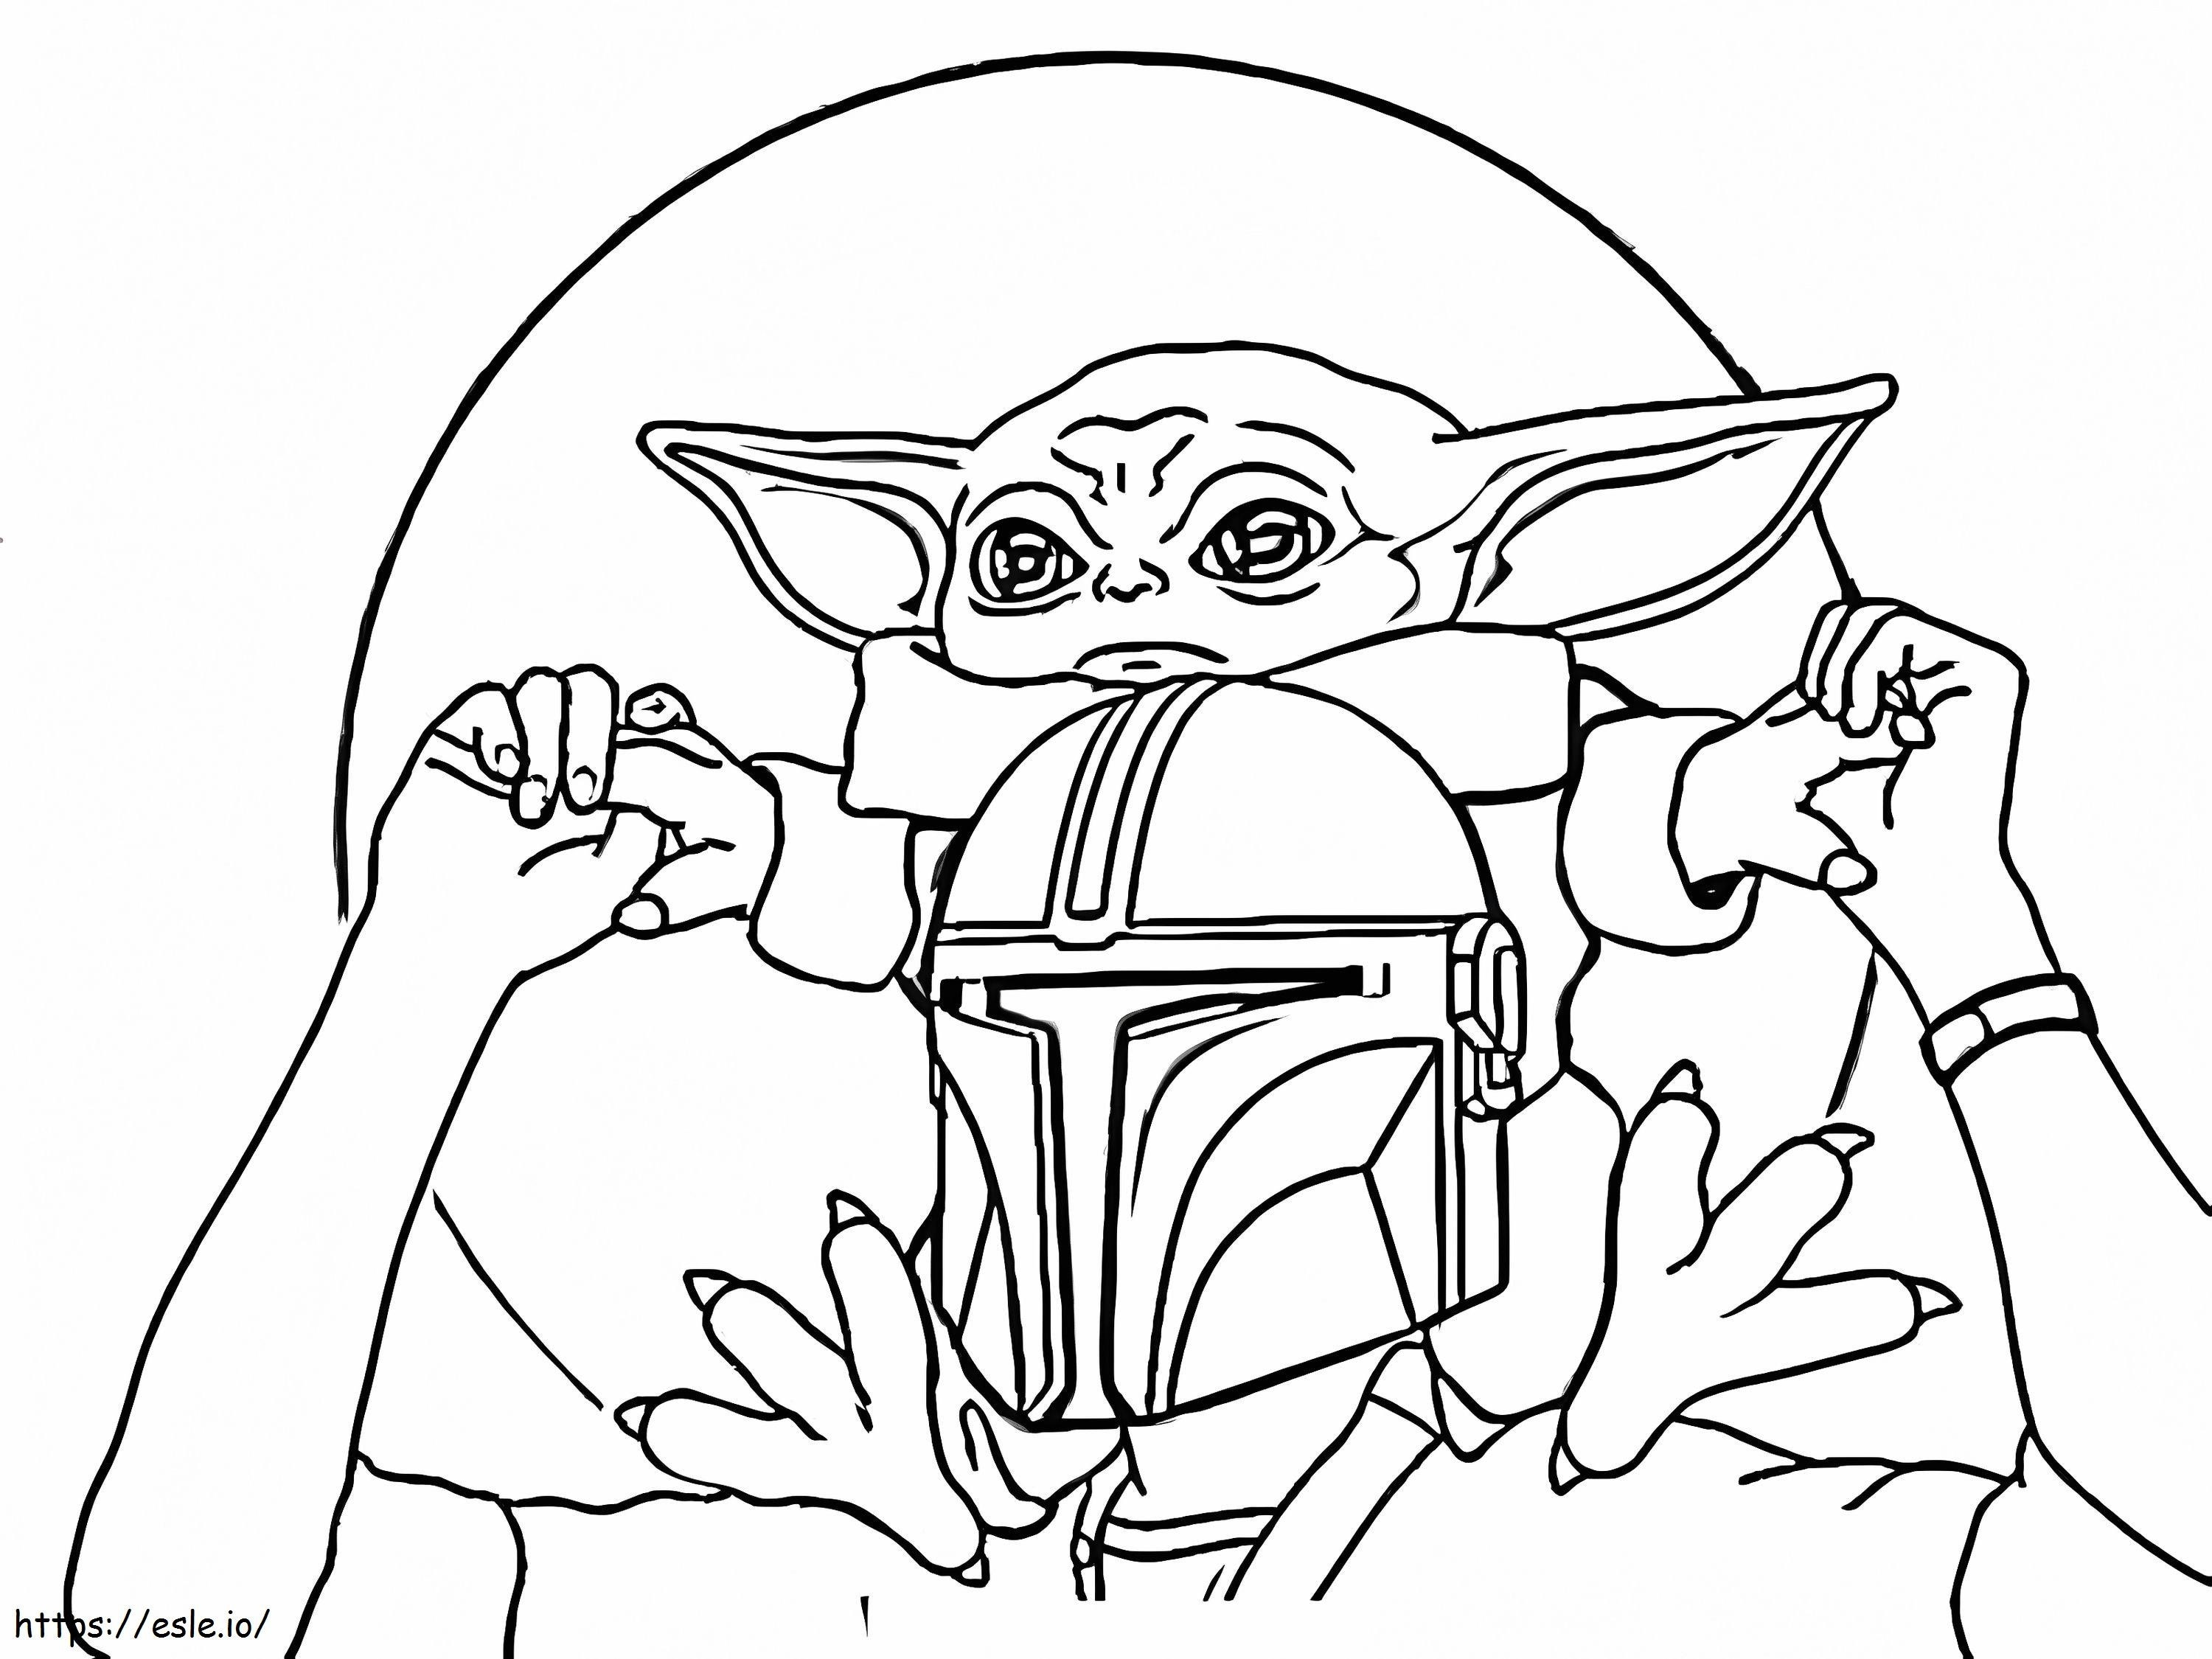 Mały Yoda z Mandalorianinem kolorowanka